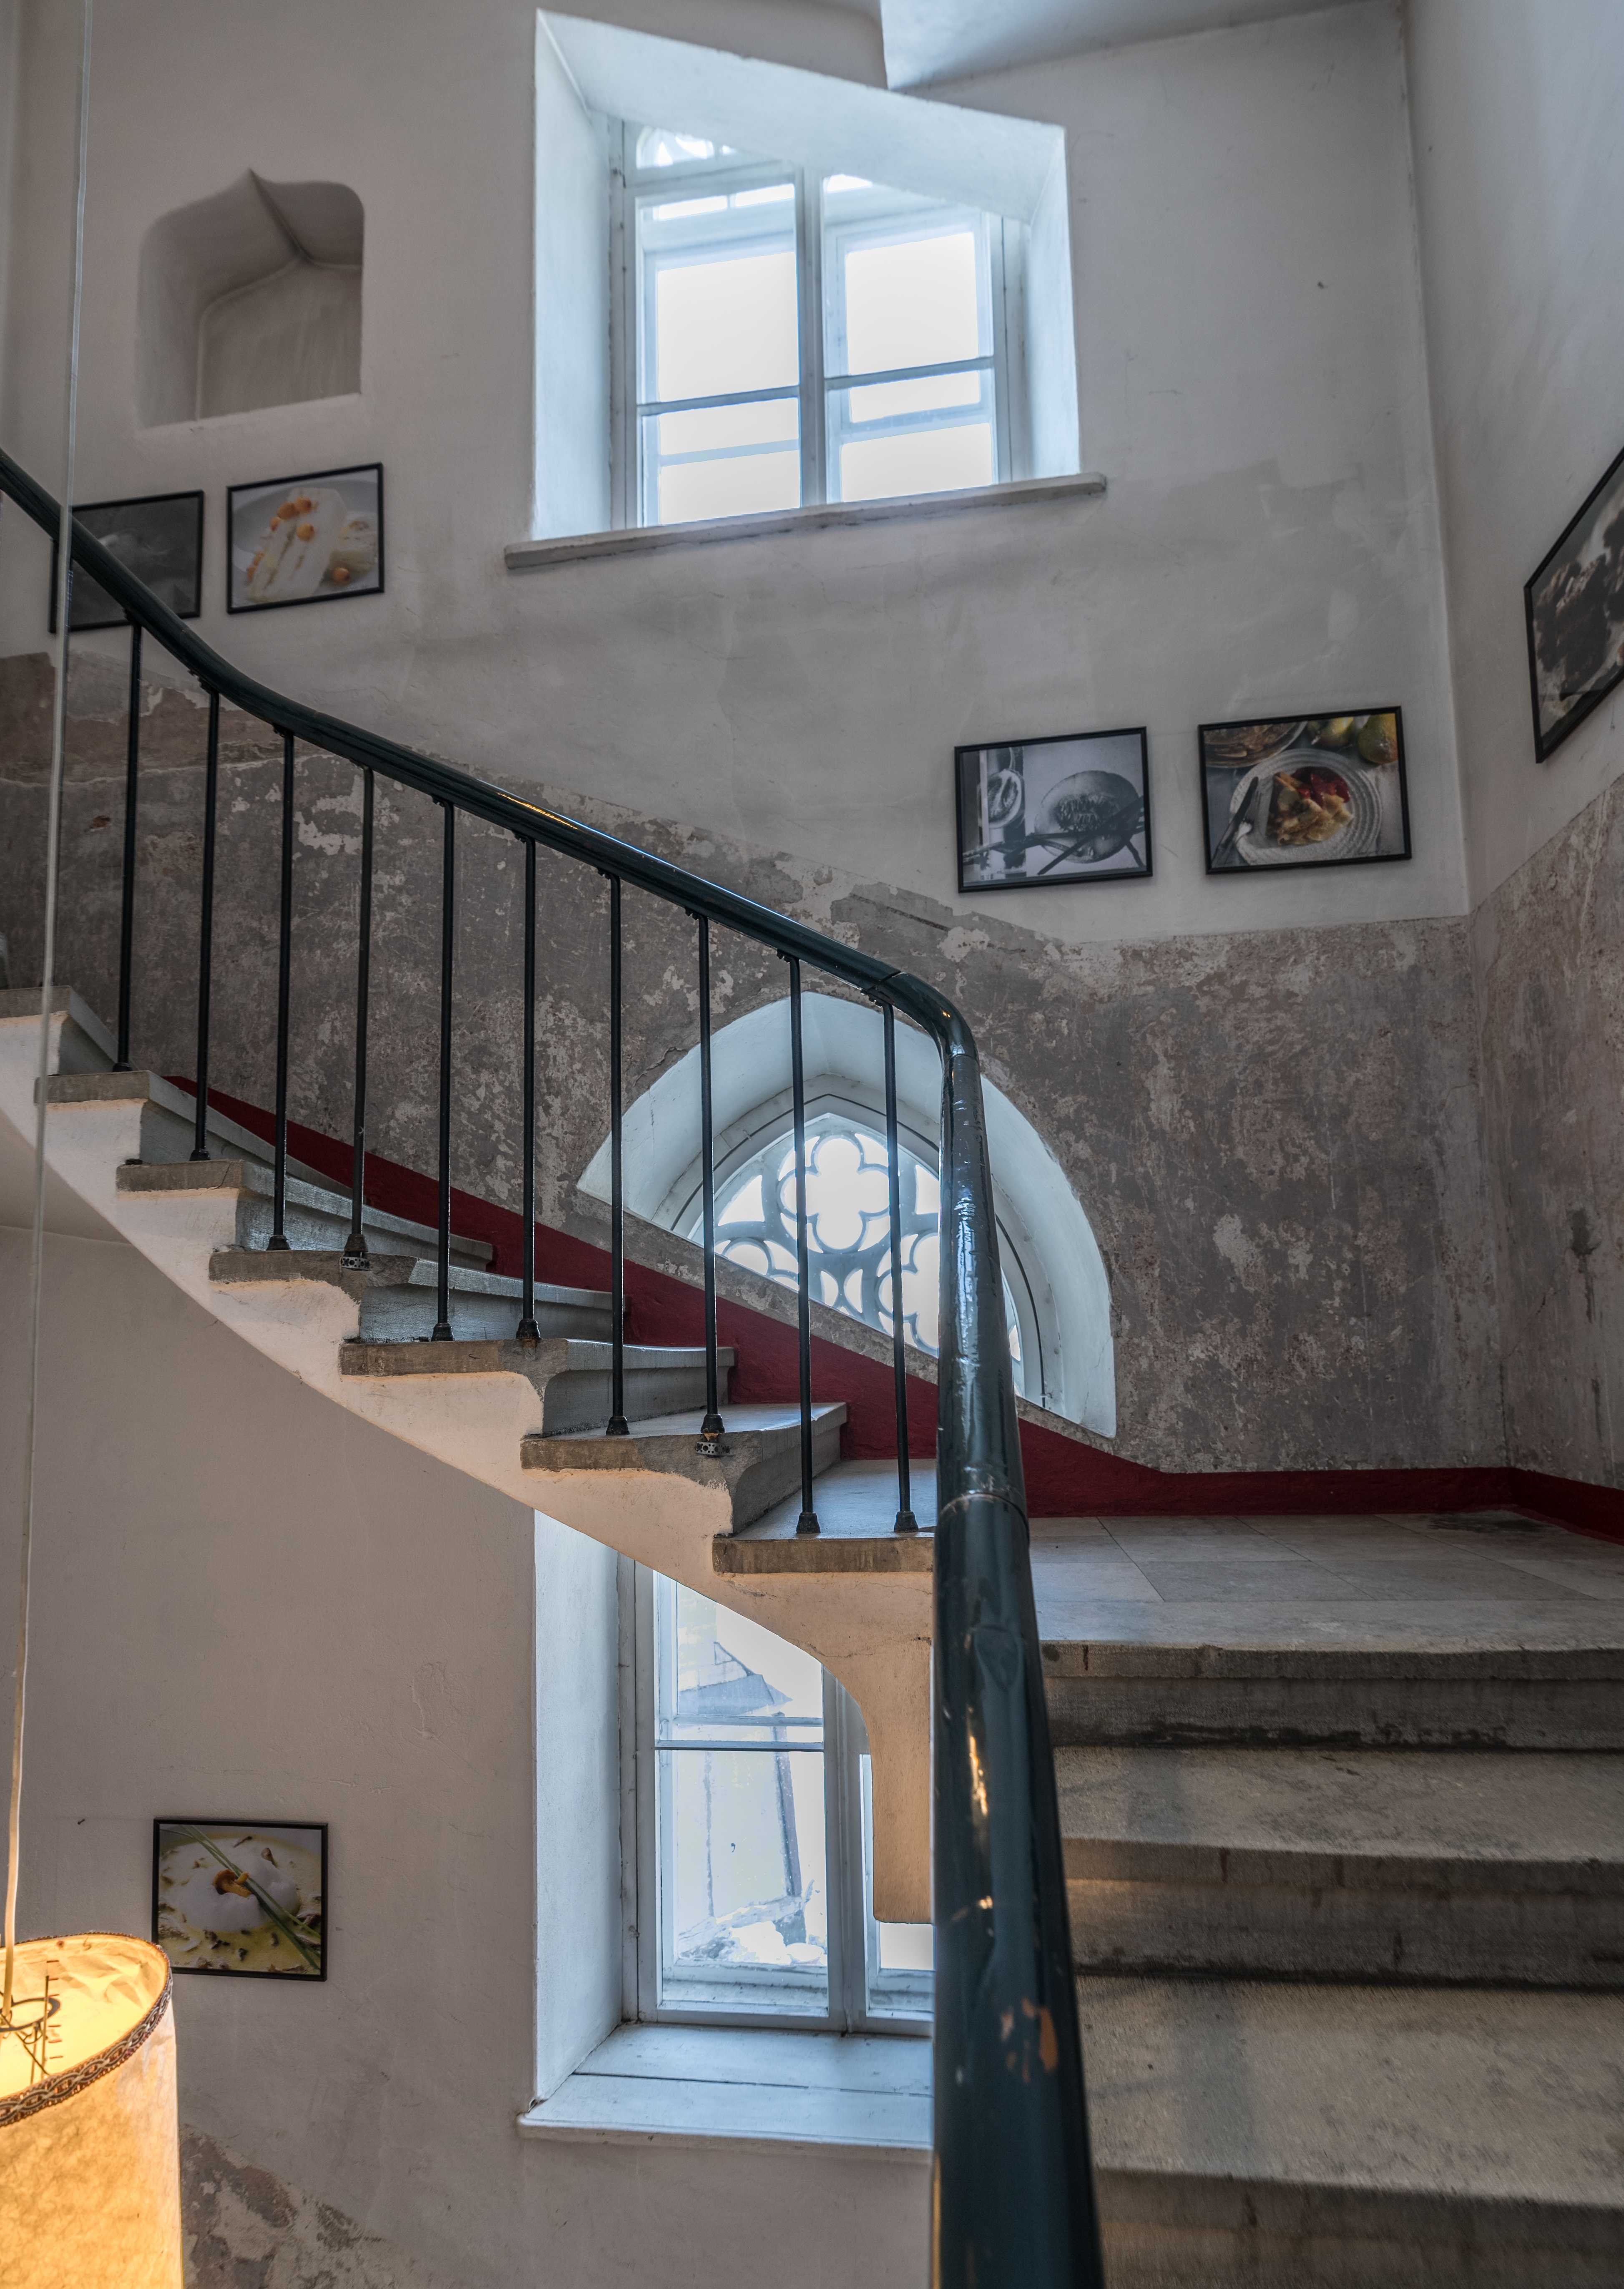 Cuadros colgados en las paredes de una escalera | Foto: Shutterstock